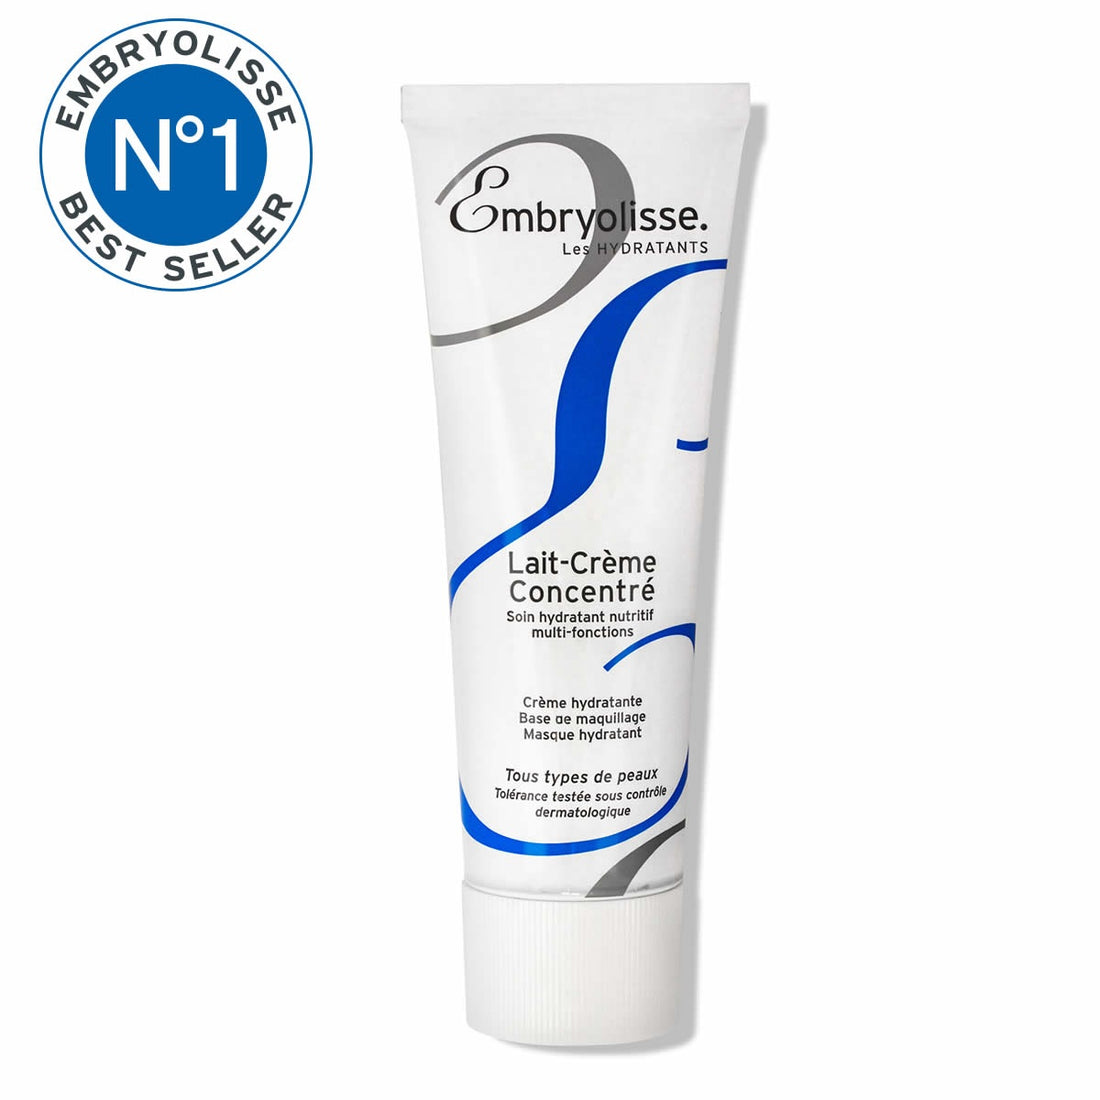 Embryolisse Lait Crème Concentré – Daily Face and Body Cream – 75ml